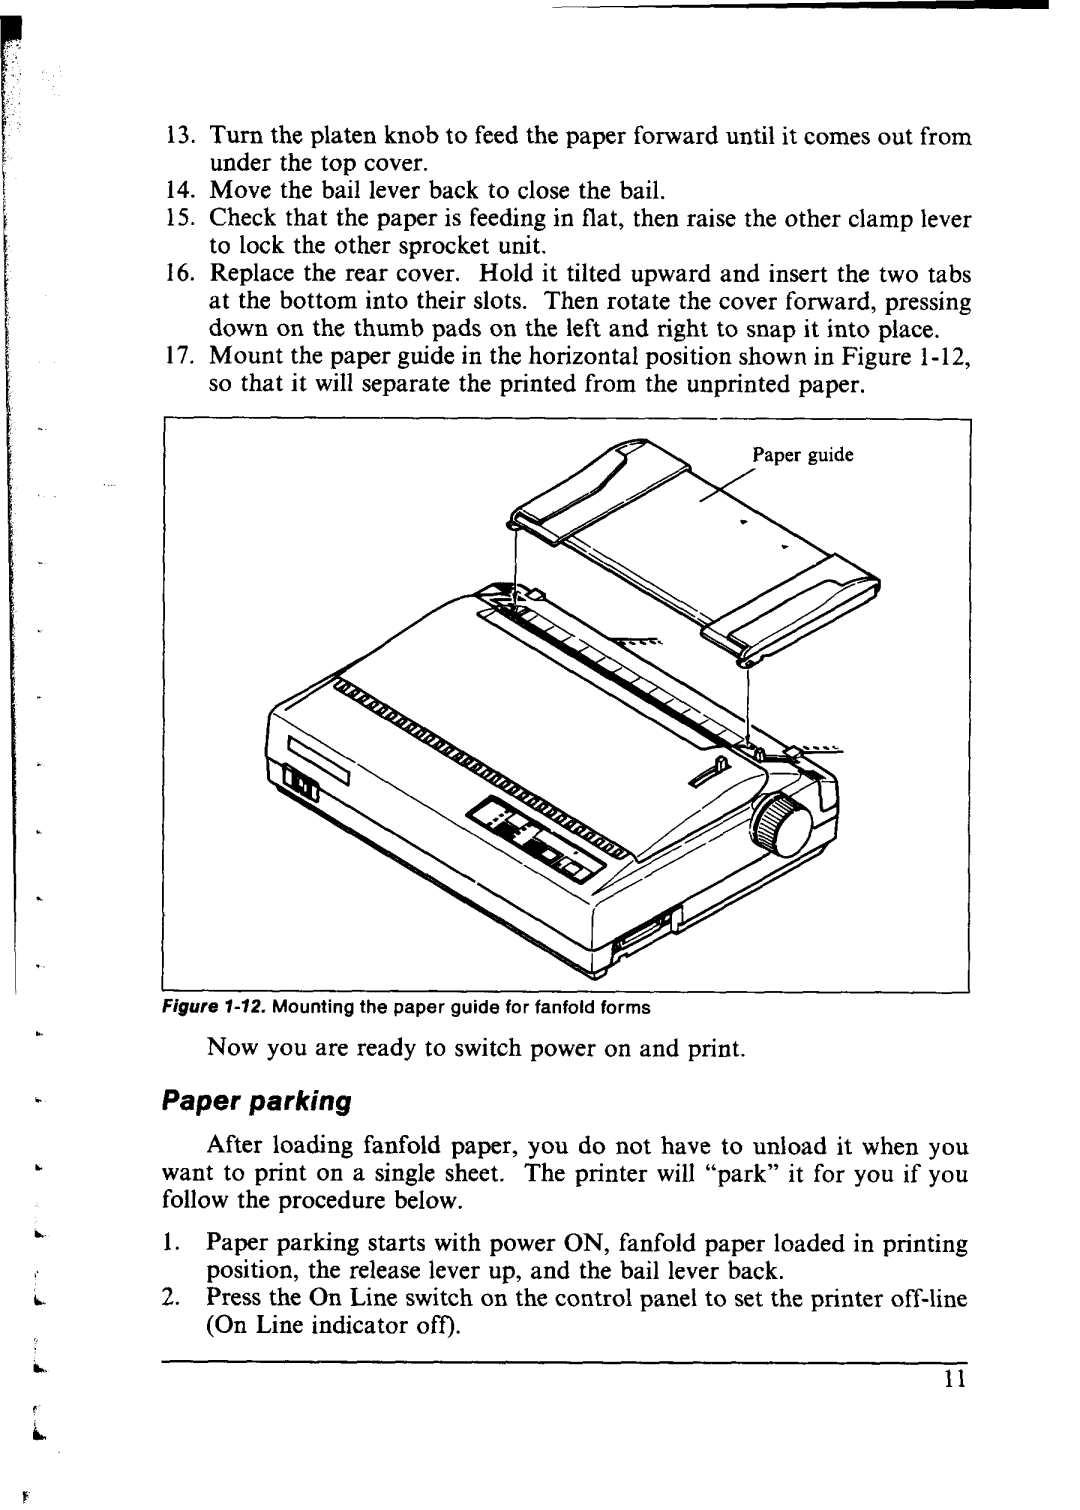 Star Micronics NX-1000 manual Paper parking 